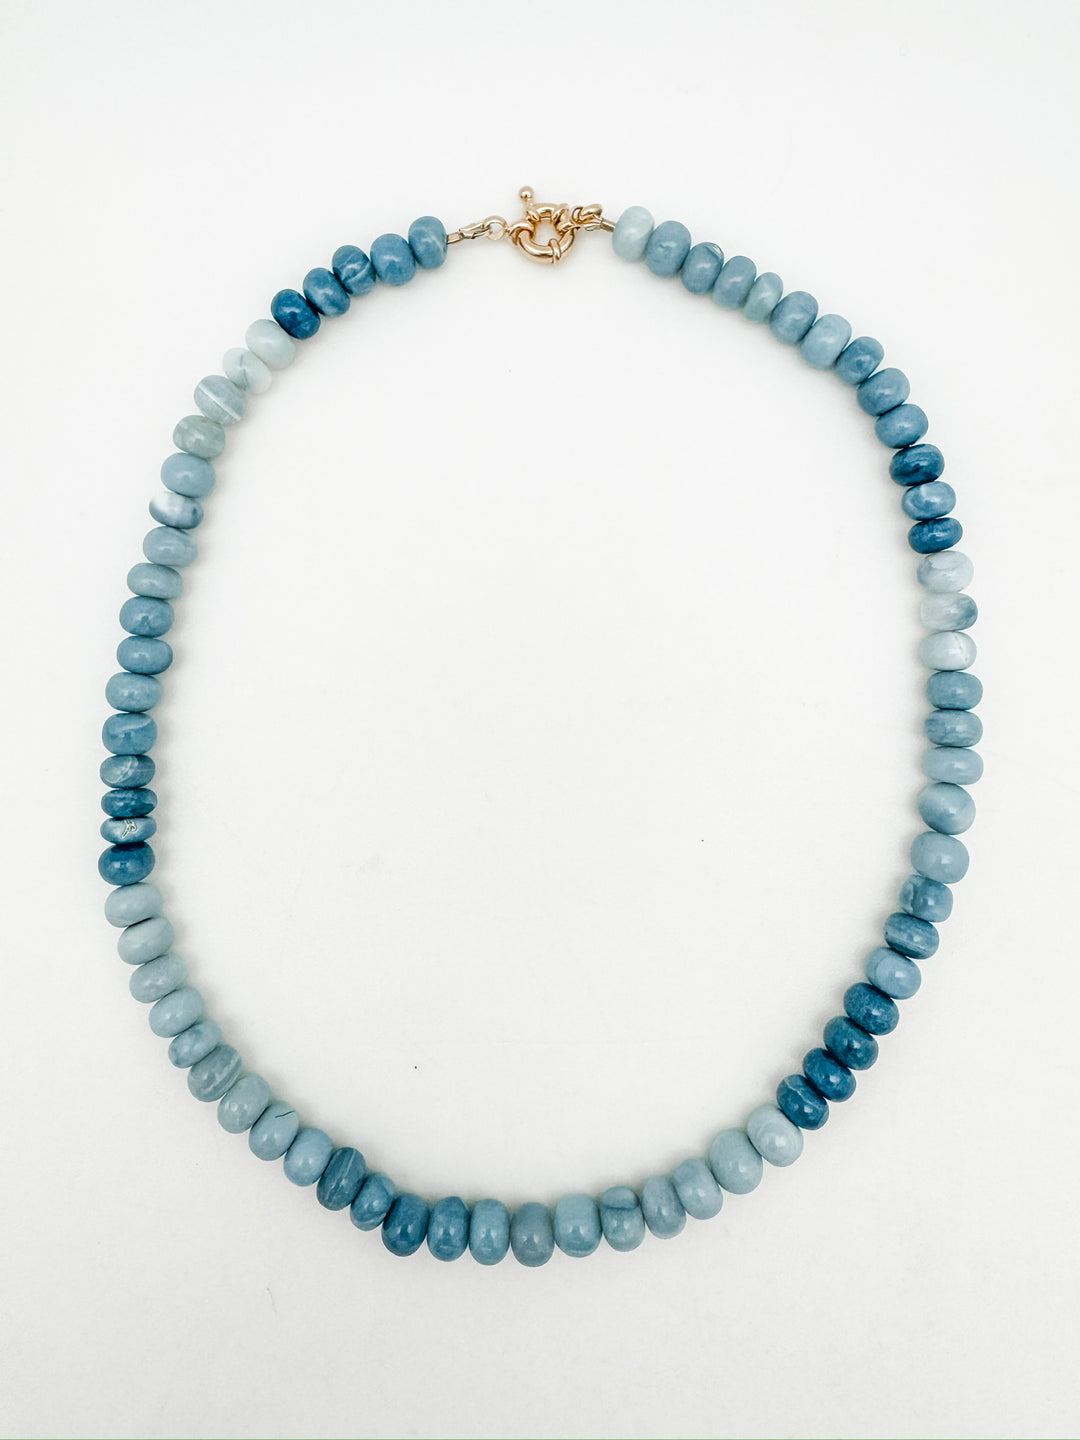 Denim blue statement, gemstone necklace